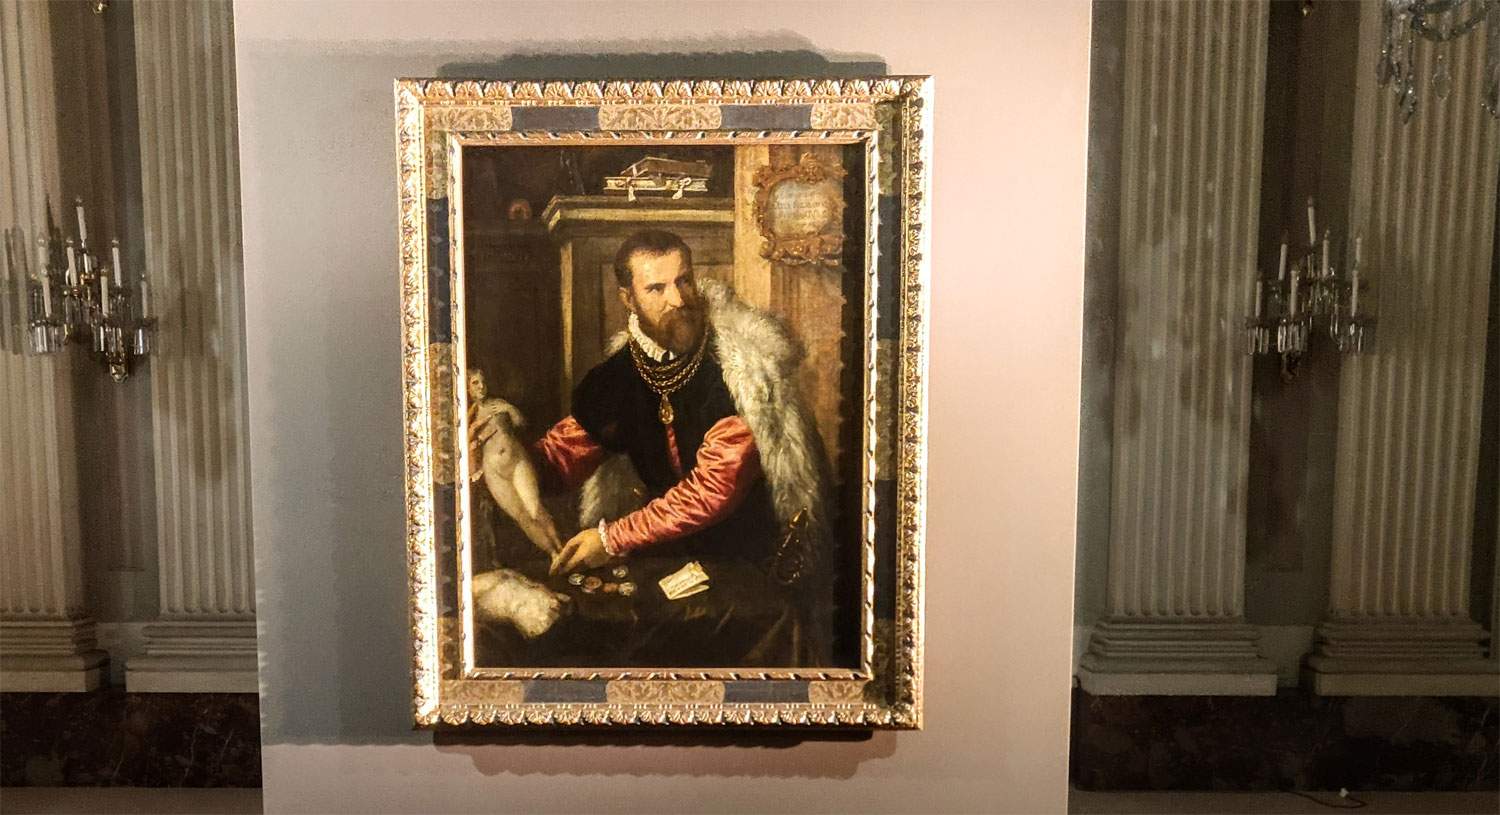 Un ospite a Palazzo Pitti: da Vienna arriva il Ritratto di Jacopo Strada di Tiziano